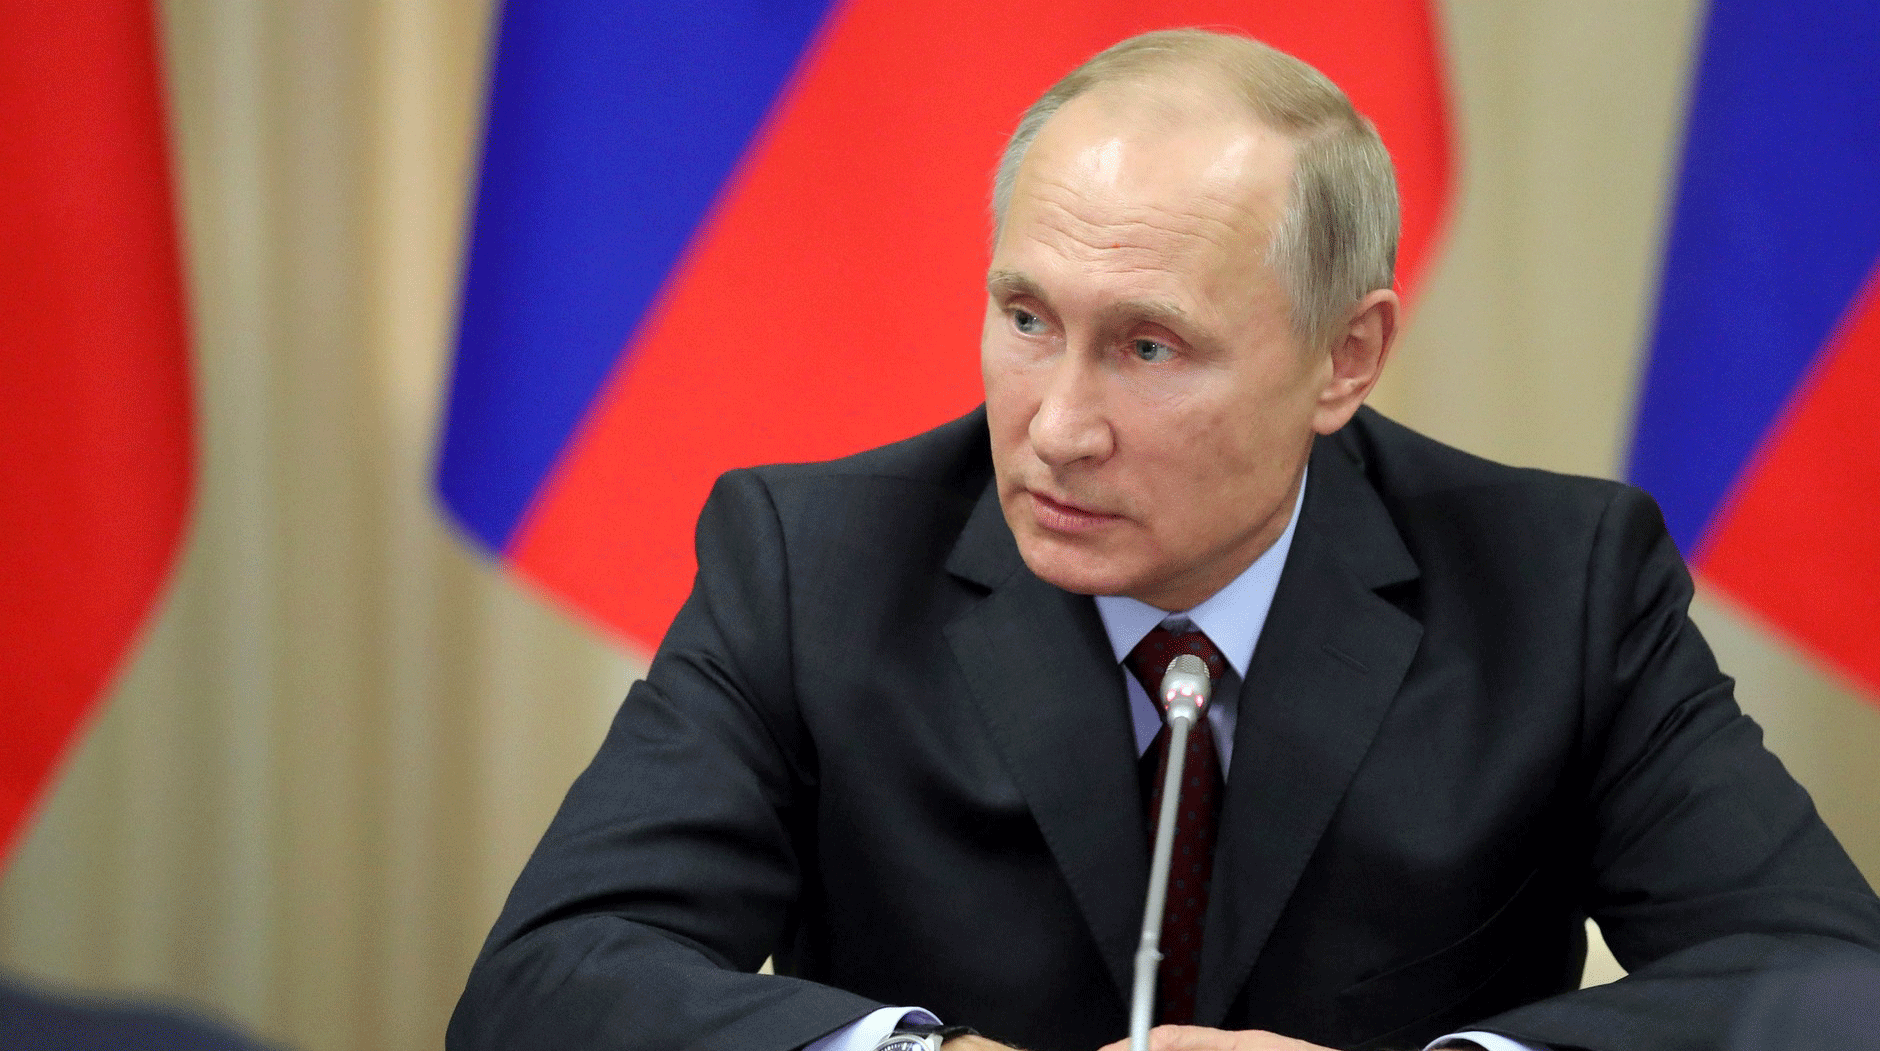 Президент России также призвал общественные организации «ломать бюрократическую закостенелость» Фото: © GLOBAL LOOK press/Kremlin Pool